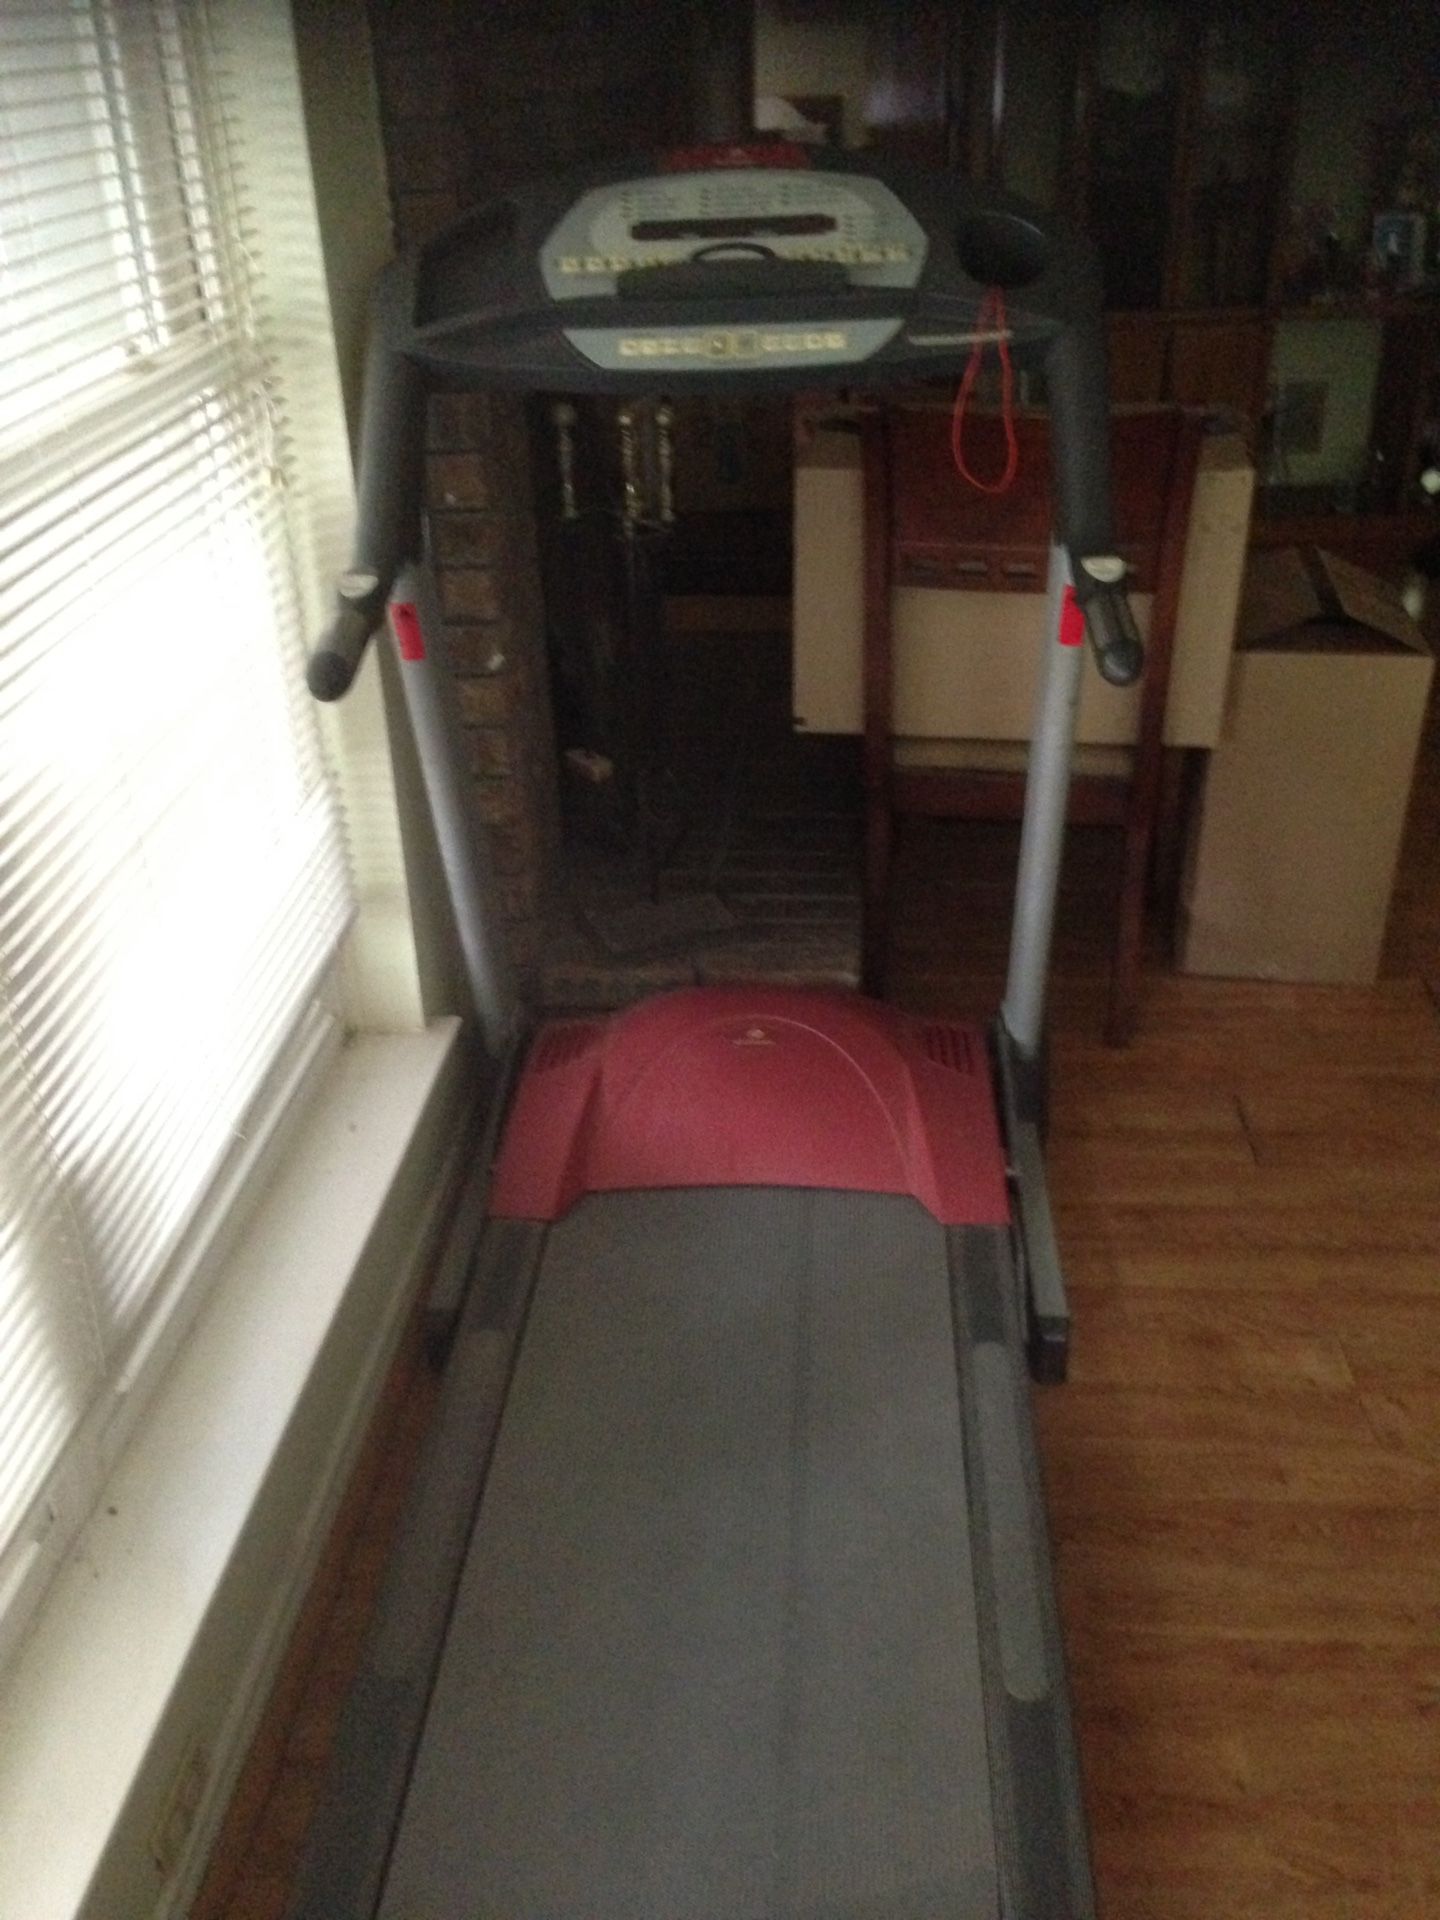 Batavus treadmill